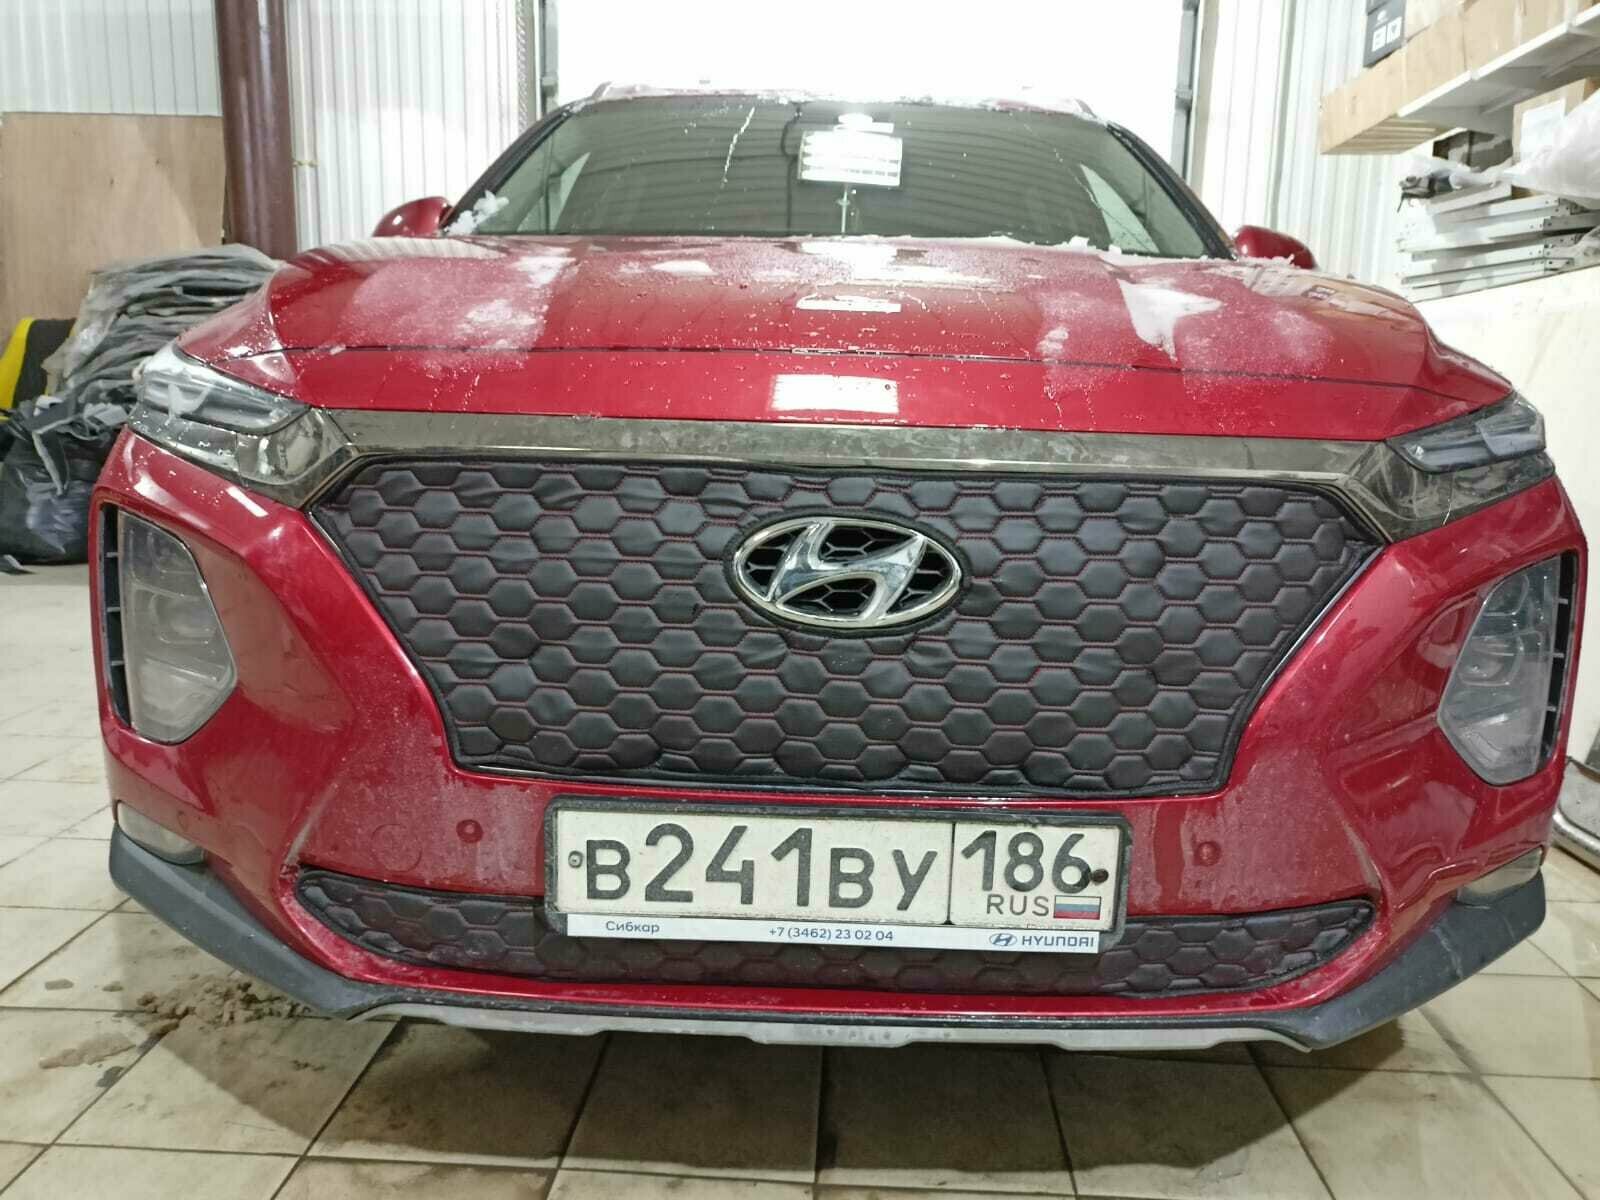 Маска-утеплитель на радиатор Premium для Hyundai Santa Fe 2018 -2020 (Комплект Строчка Красная Соты)